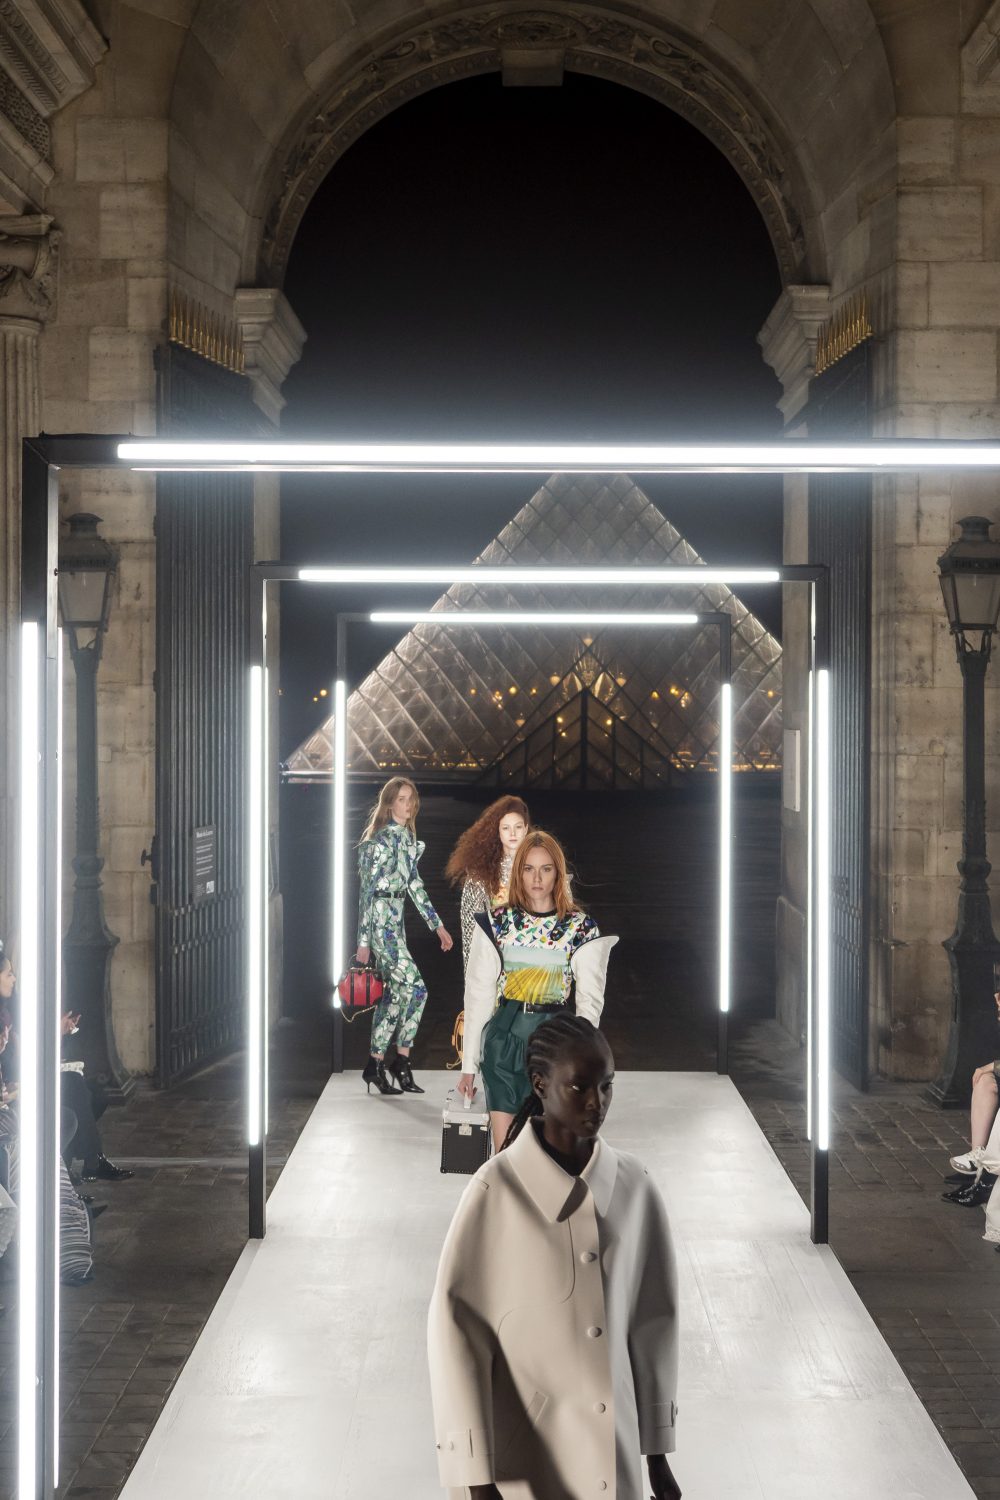 Louis Vuitton Illuminates the Louvre: PFW SS19